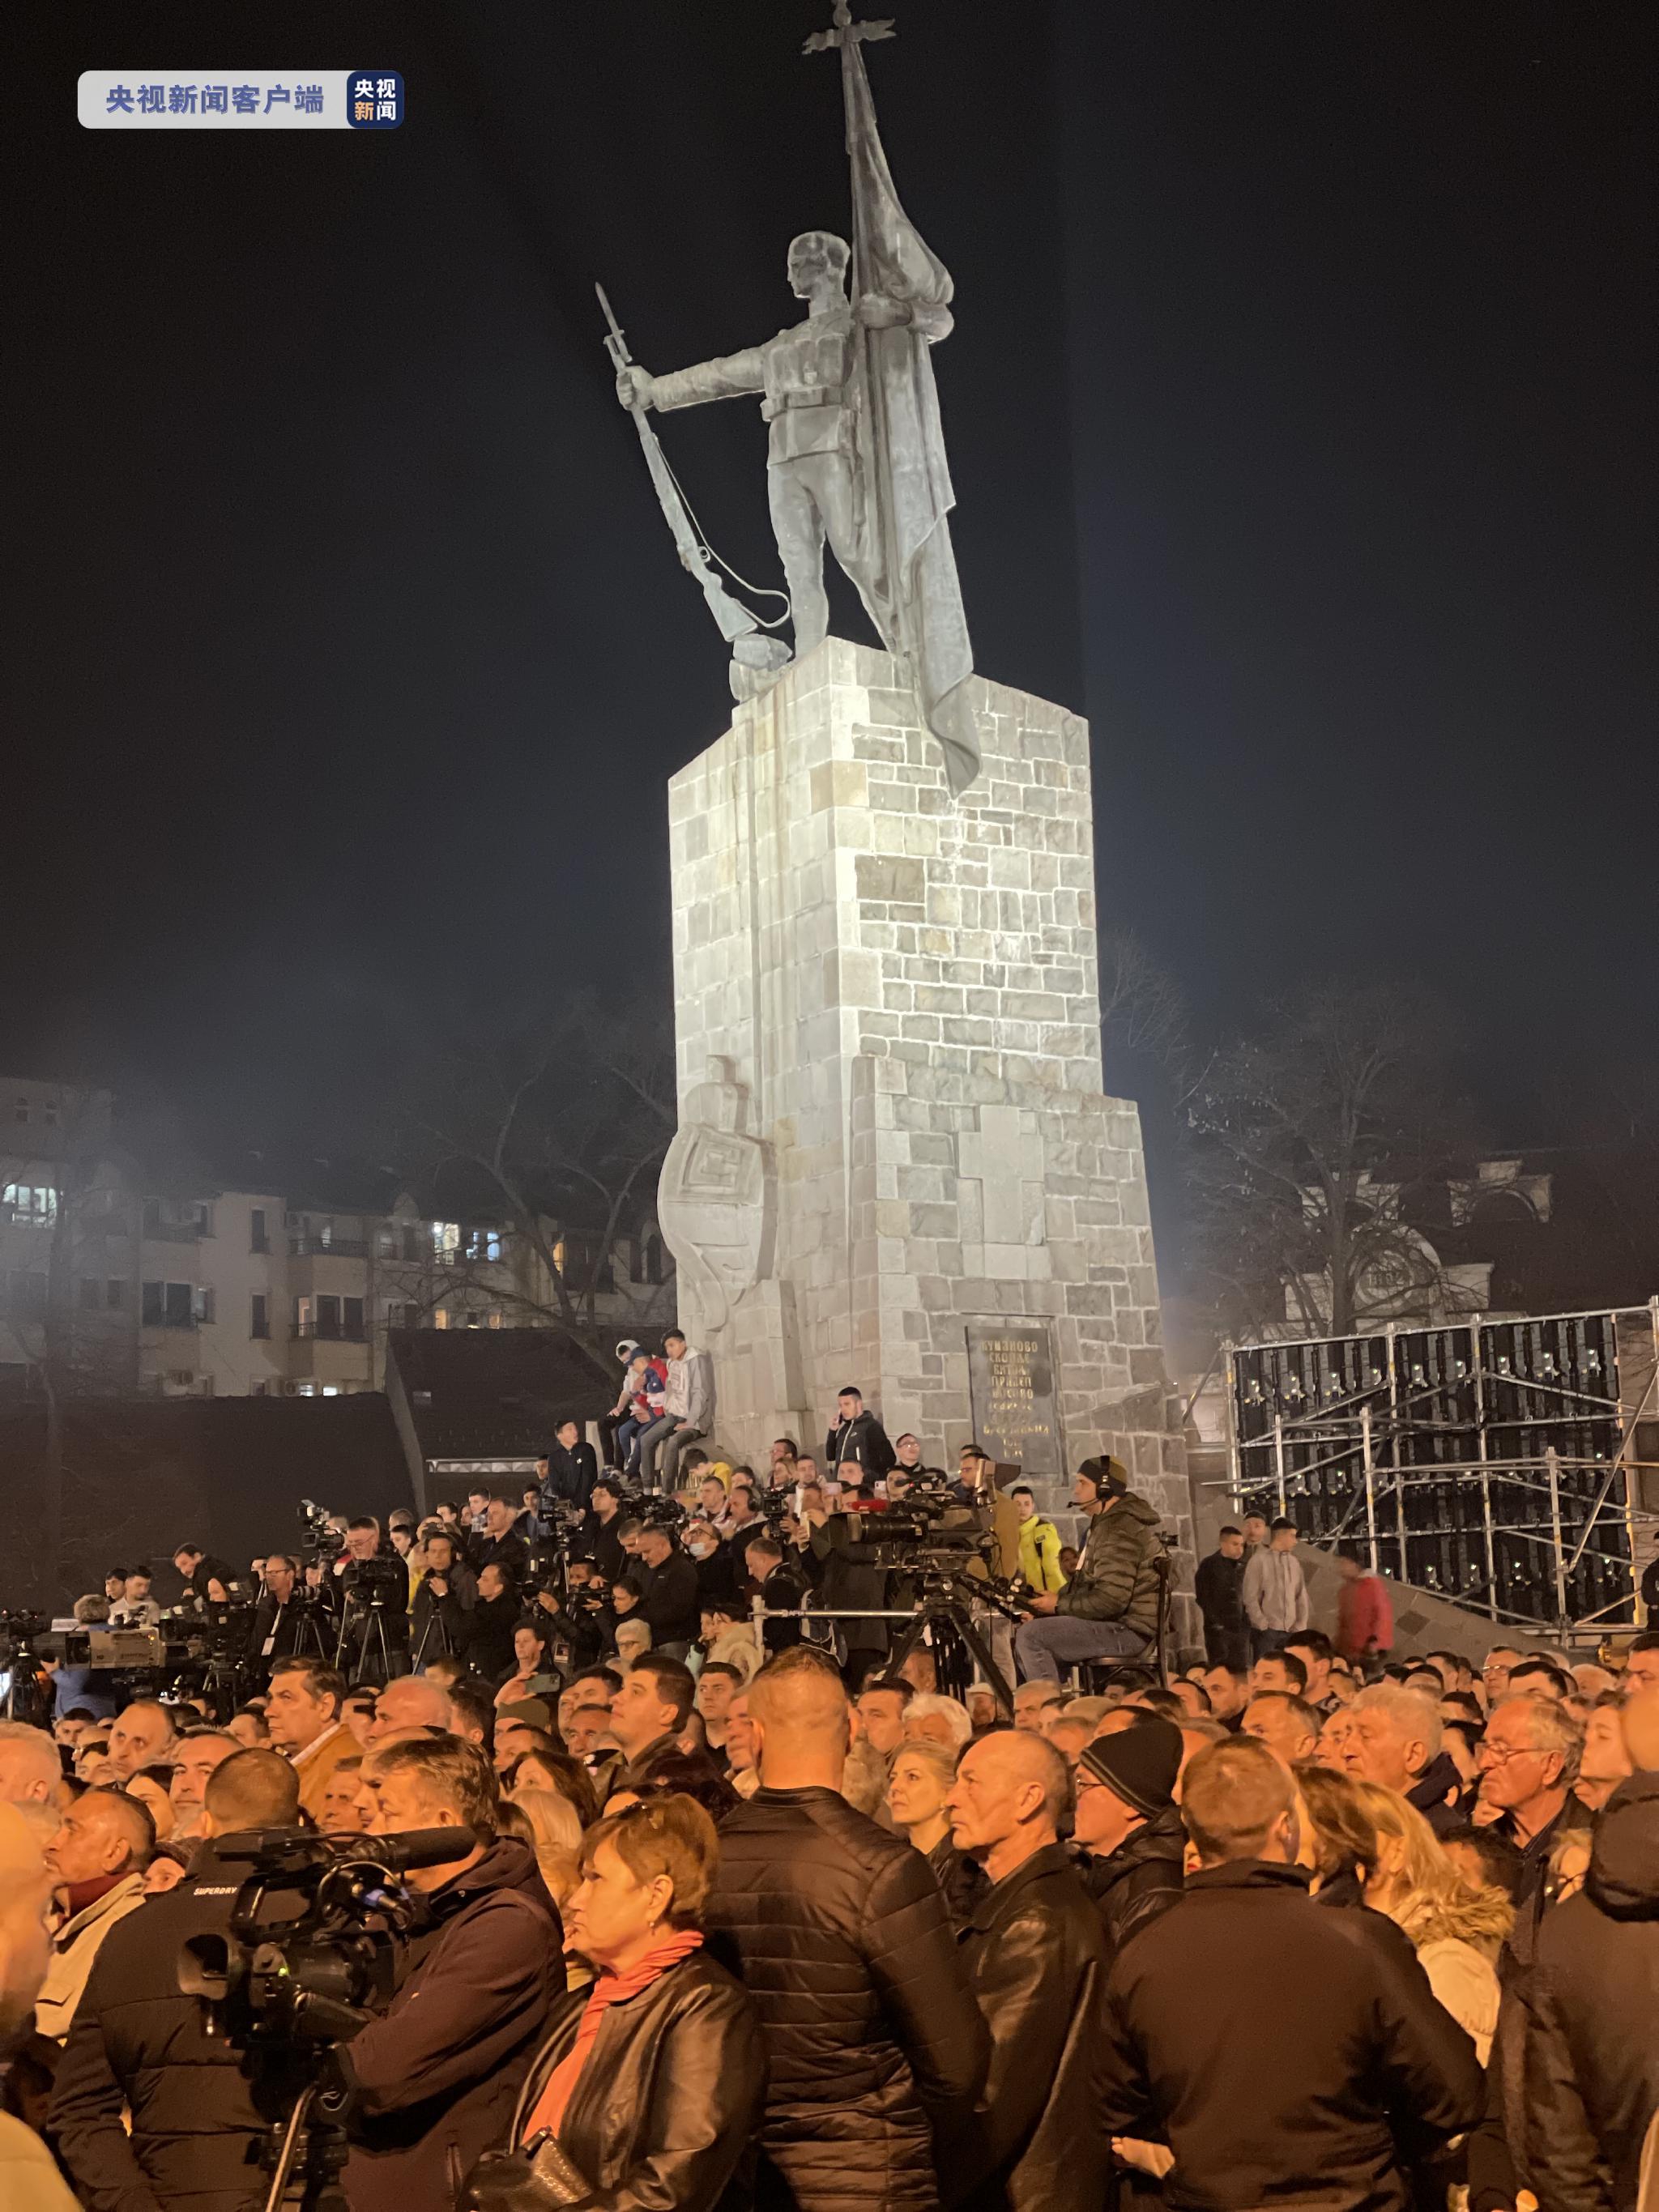 △活动举办地塞尔维亚战士广场聚集了众多参加悼念活动的民众